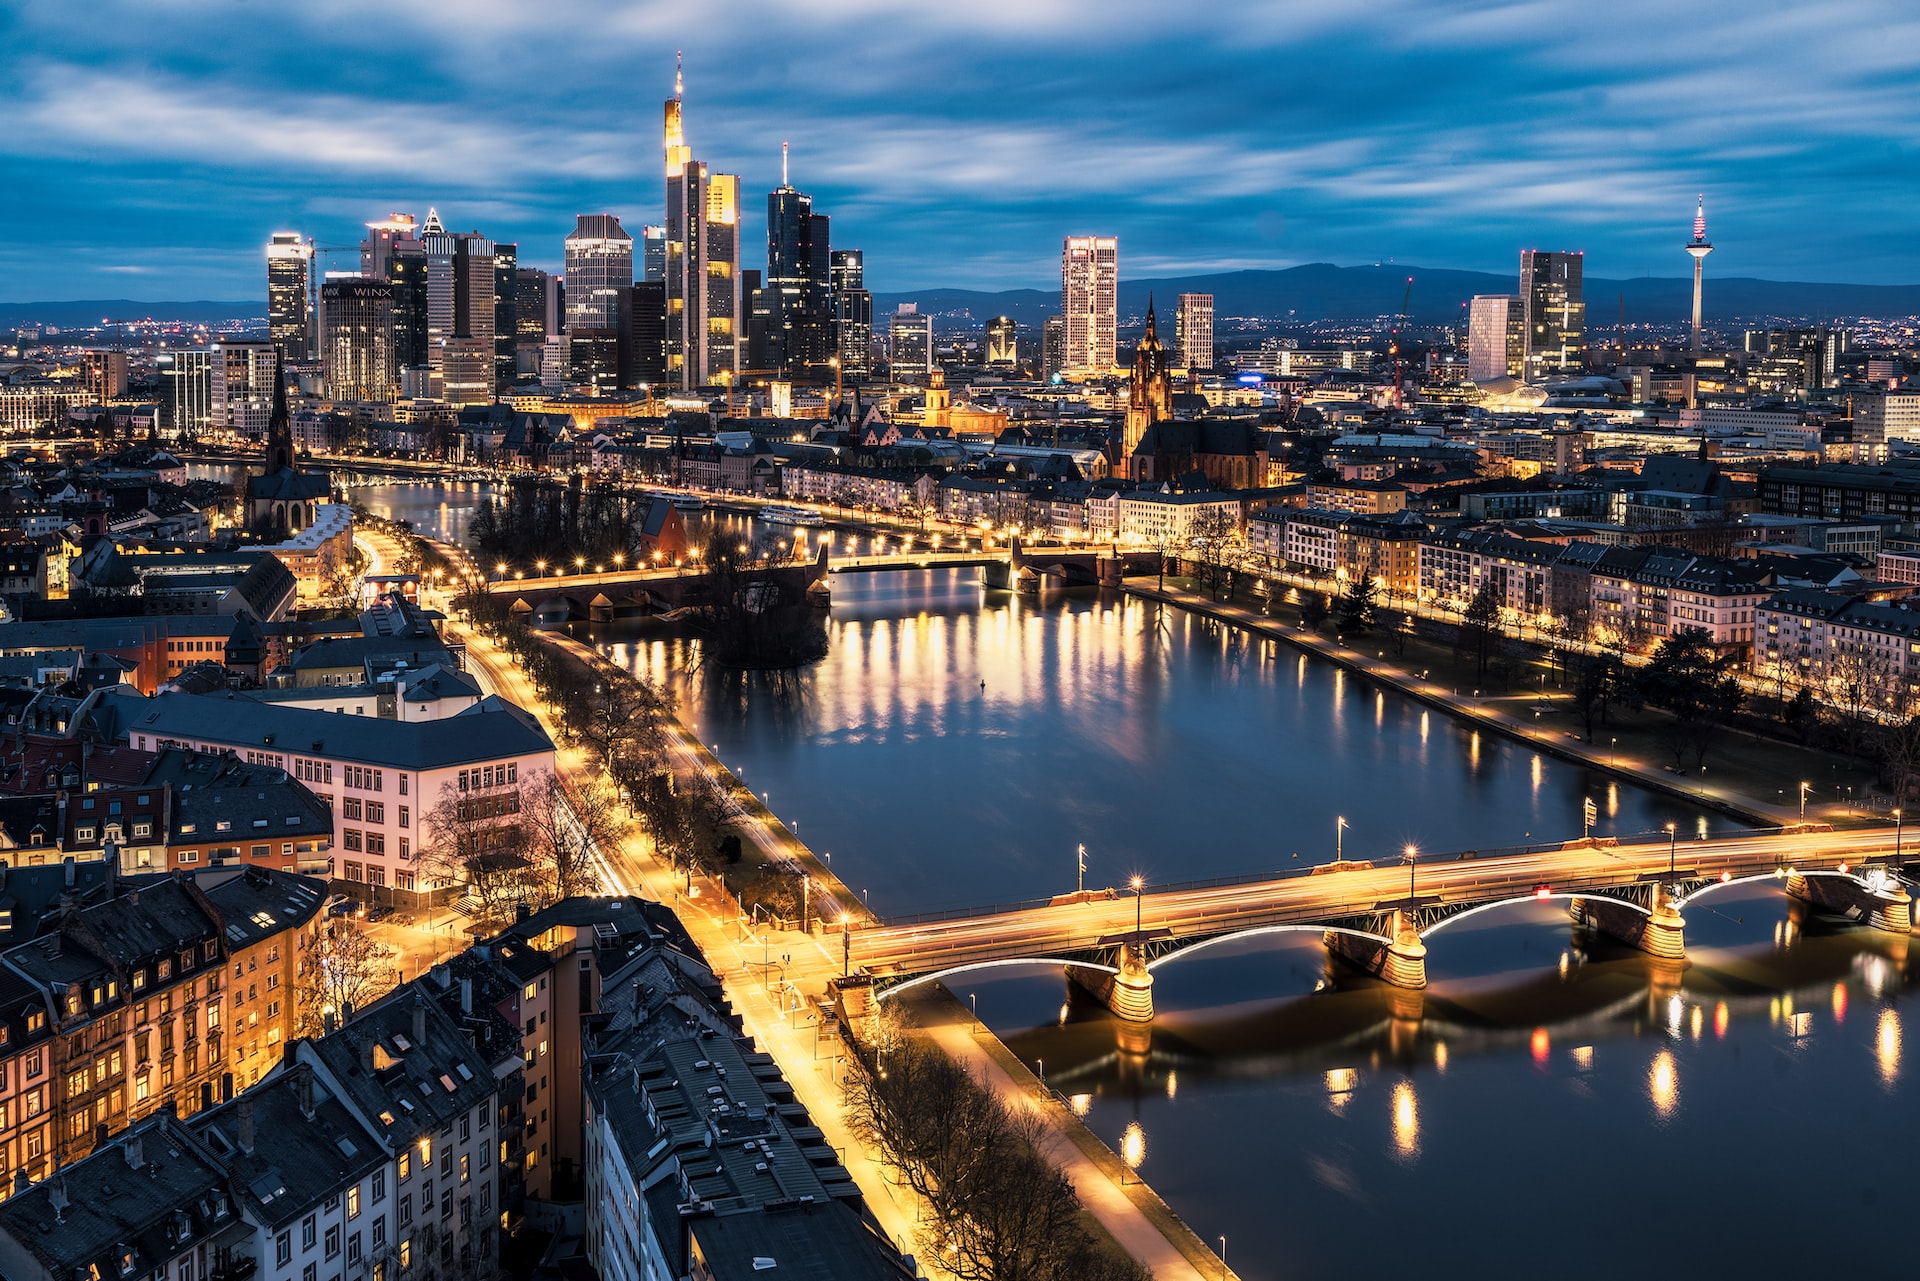 Die Skyline von Frankfurt hell erleuchtet bei Nacht